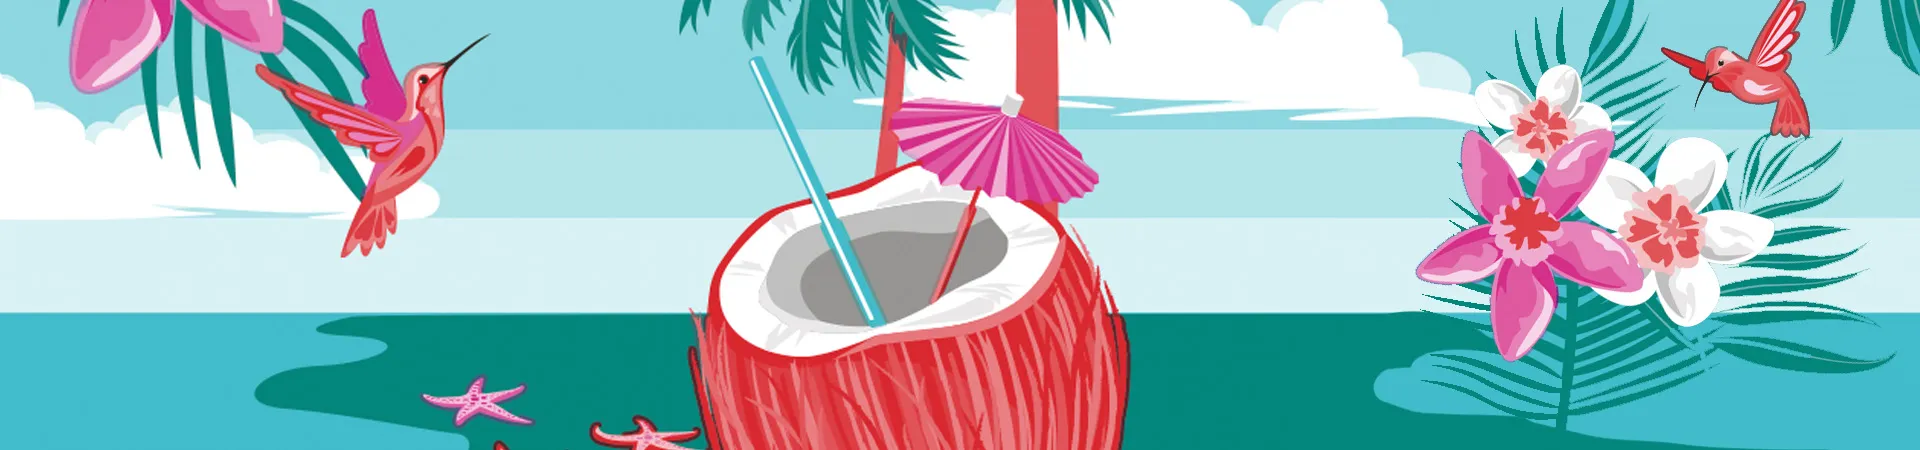 Grafika kokosa na turkusowym tle